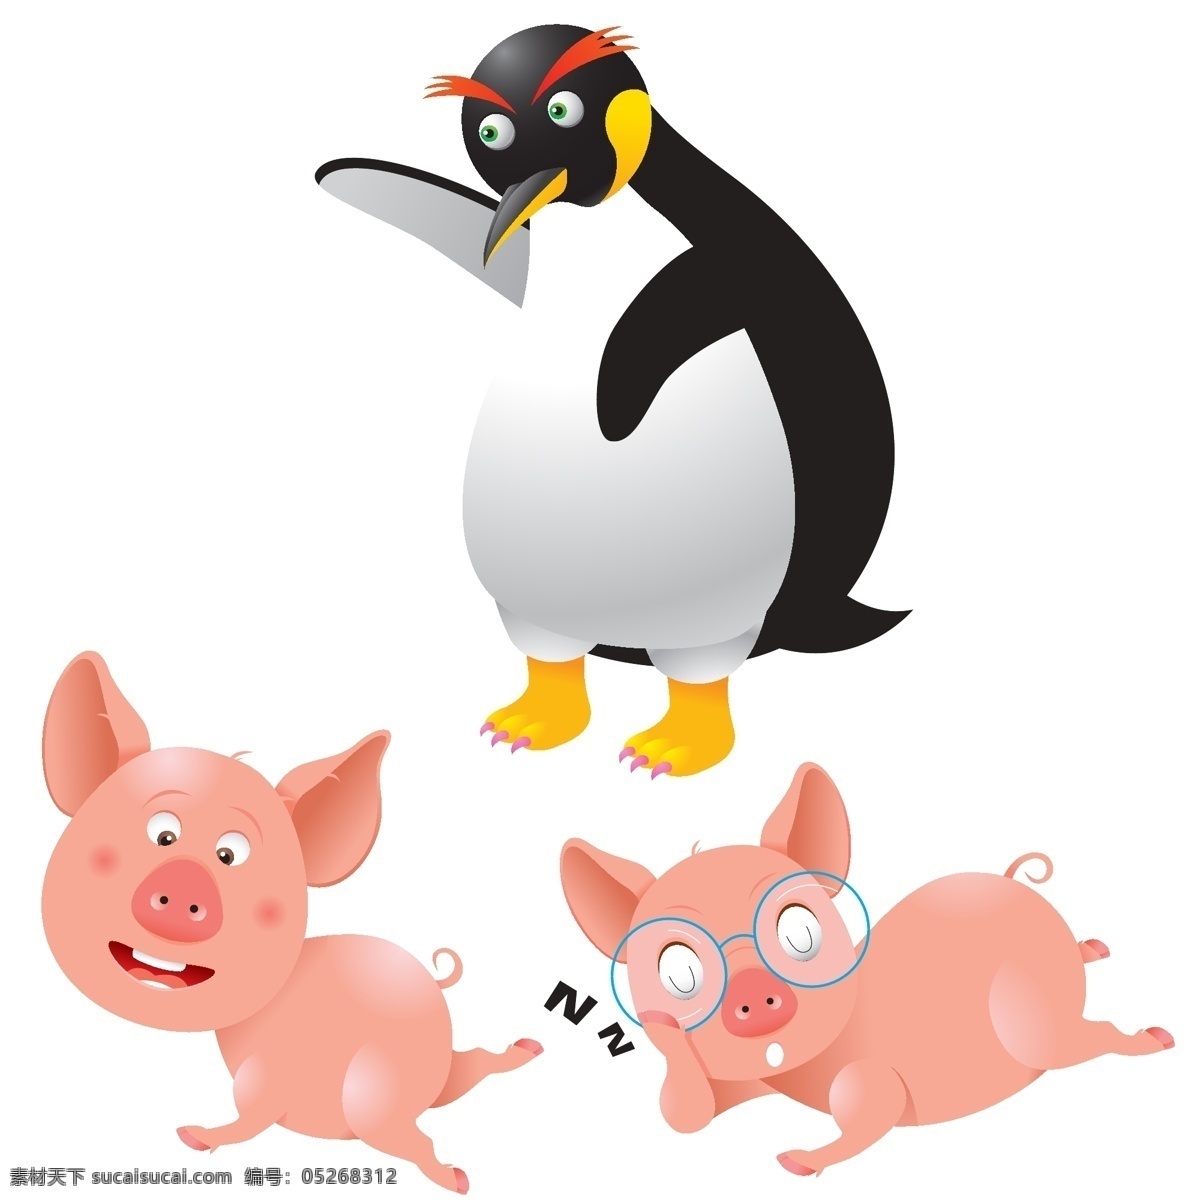 小猪猪 小企鹅 动物 动物世界 生物世界 矢量设计 矢量 其他生物